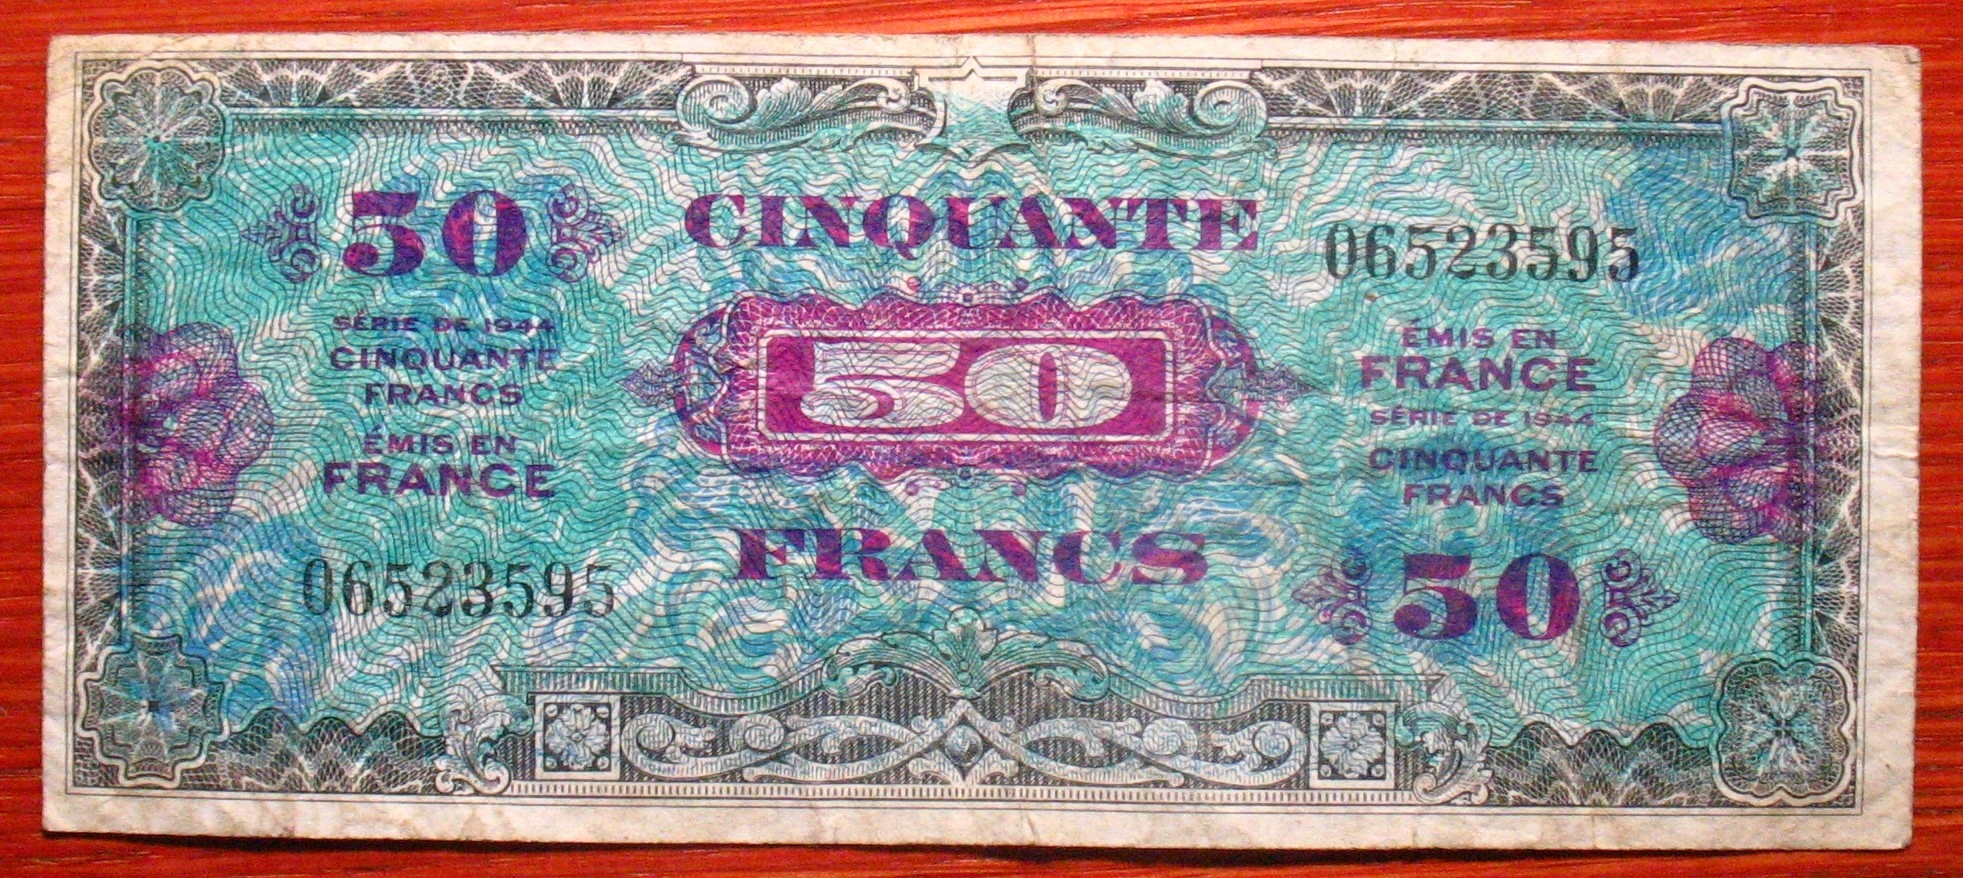 Okupacja Francji 1944 r. 50 franków 06523595 z obiegu